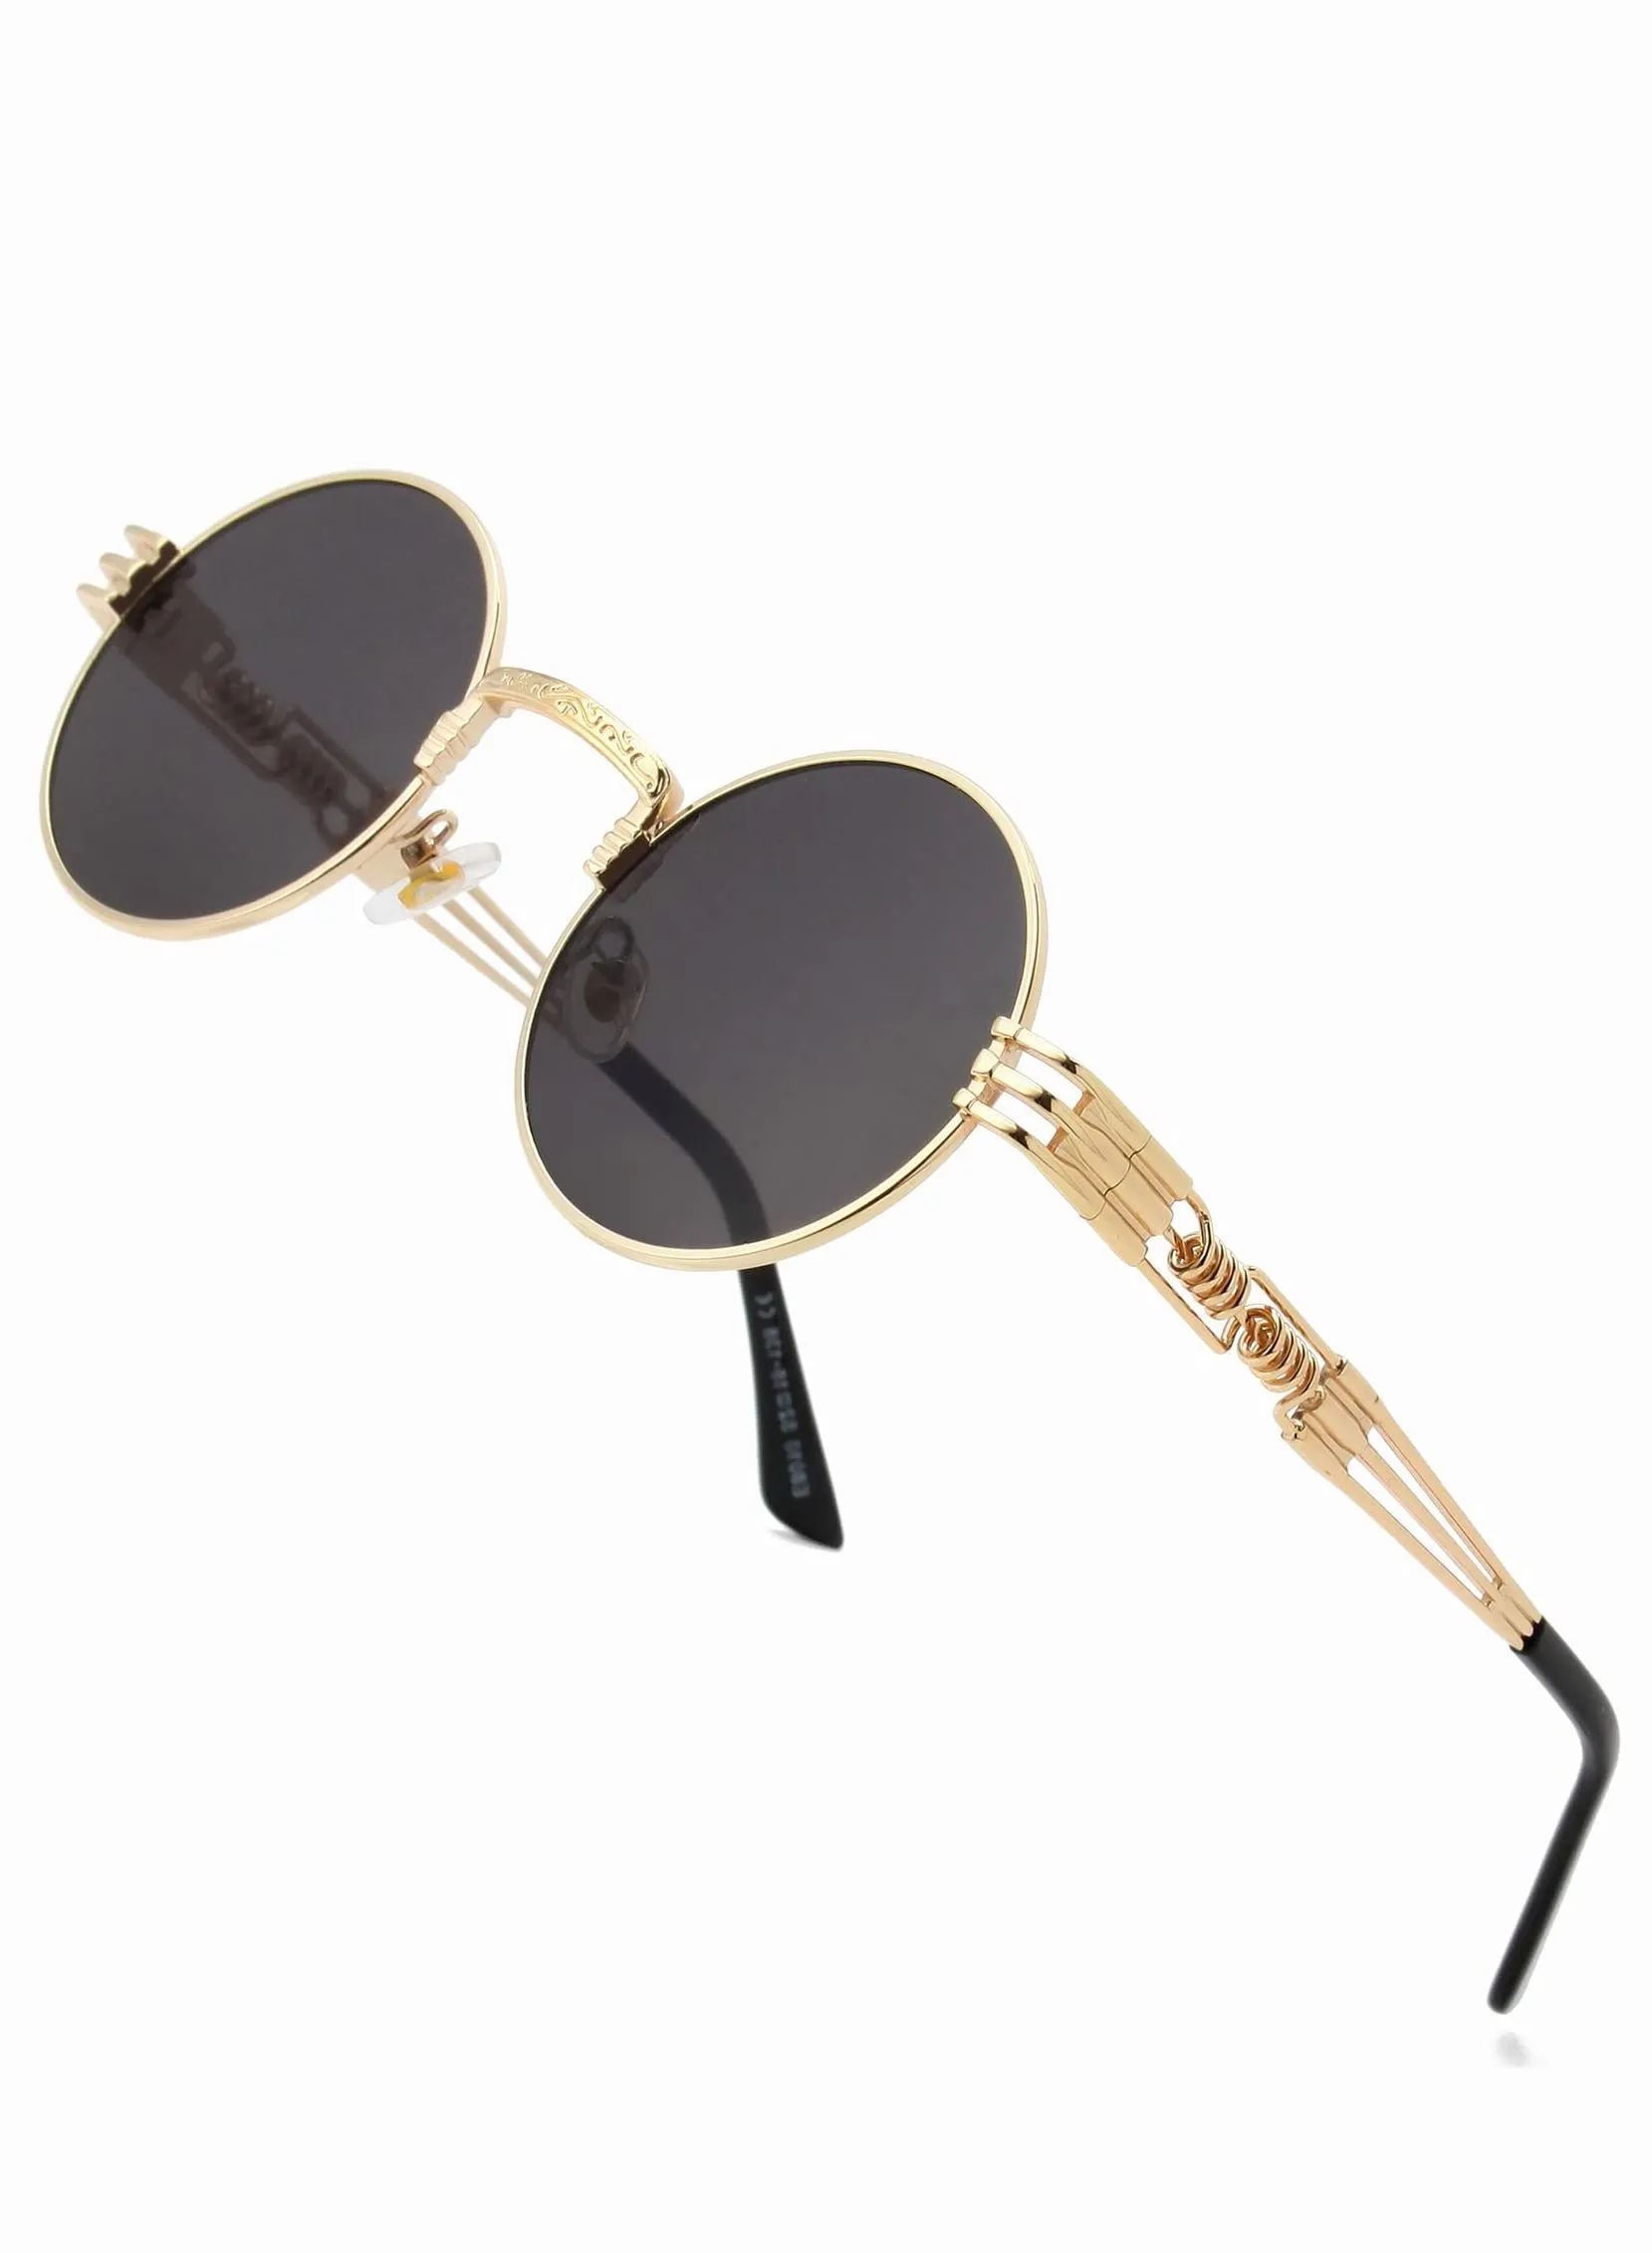 نظارات شمسية مستديرة Steampunk من Roaiss للرجال والنساء، نظارات هيبي بإطار معدني 100% عدسات تحجب الأشعة فوق البنفسجية